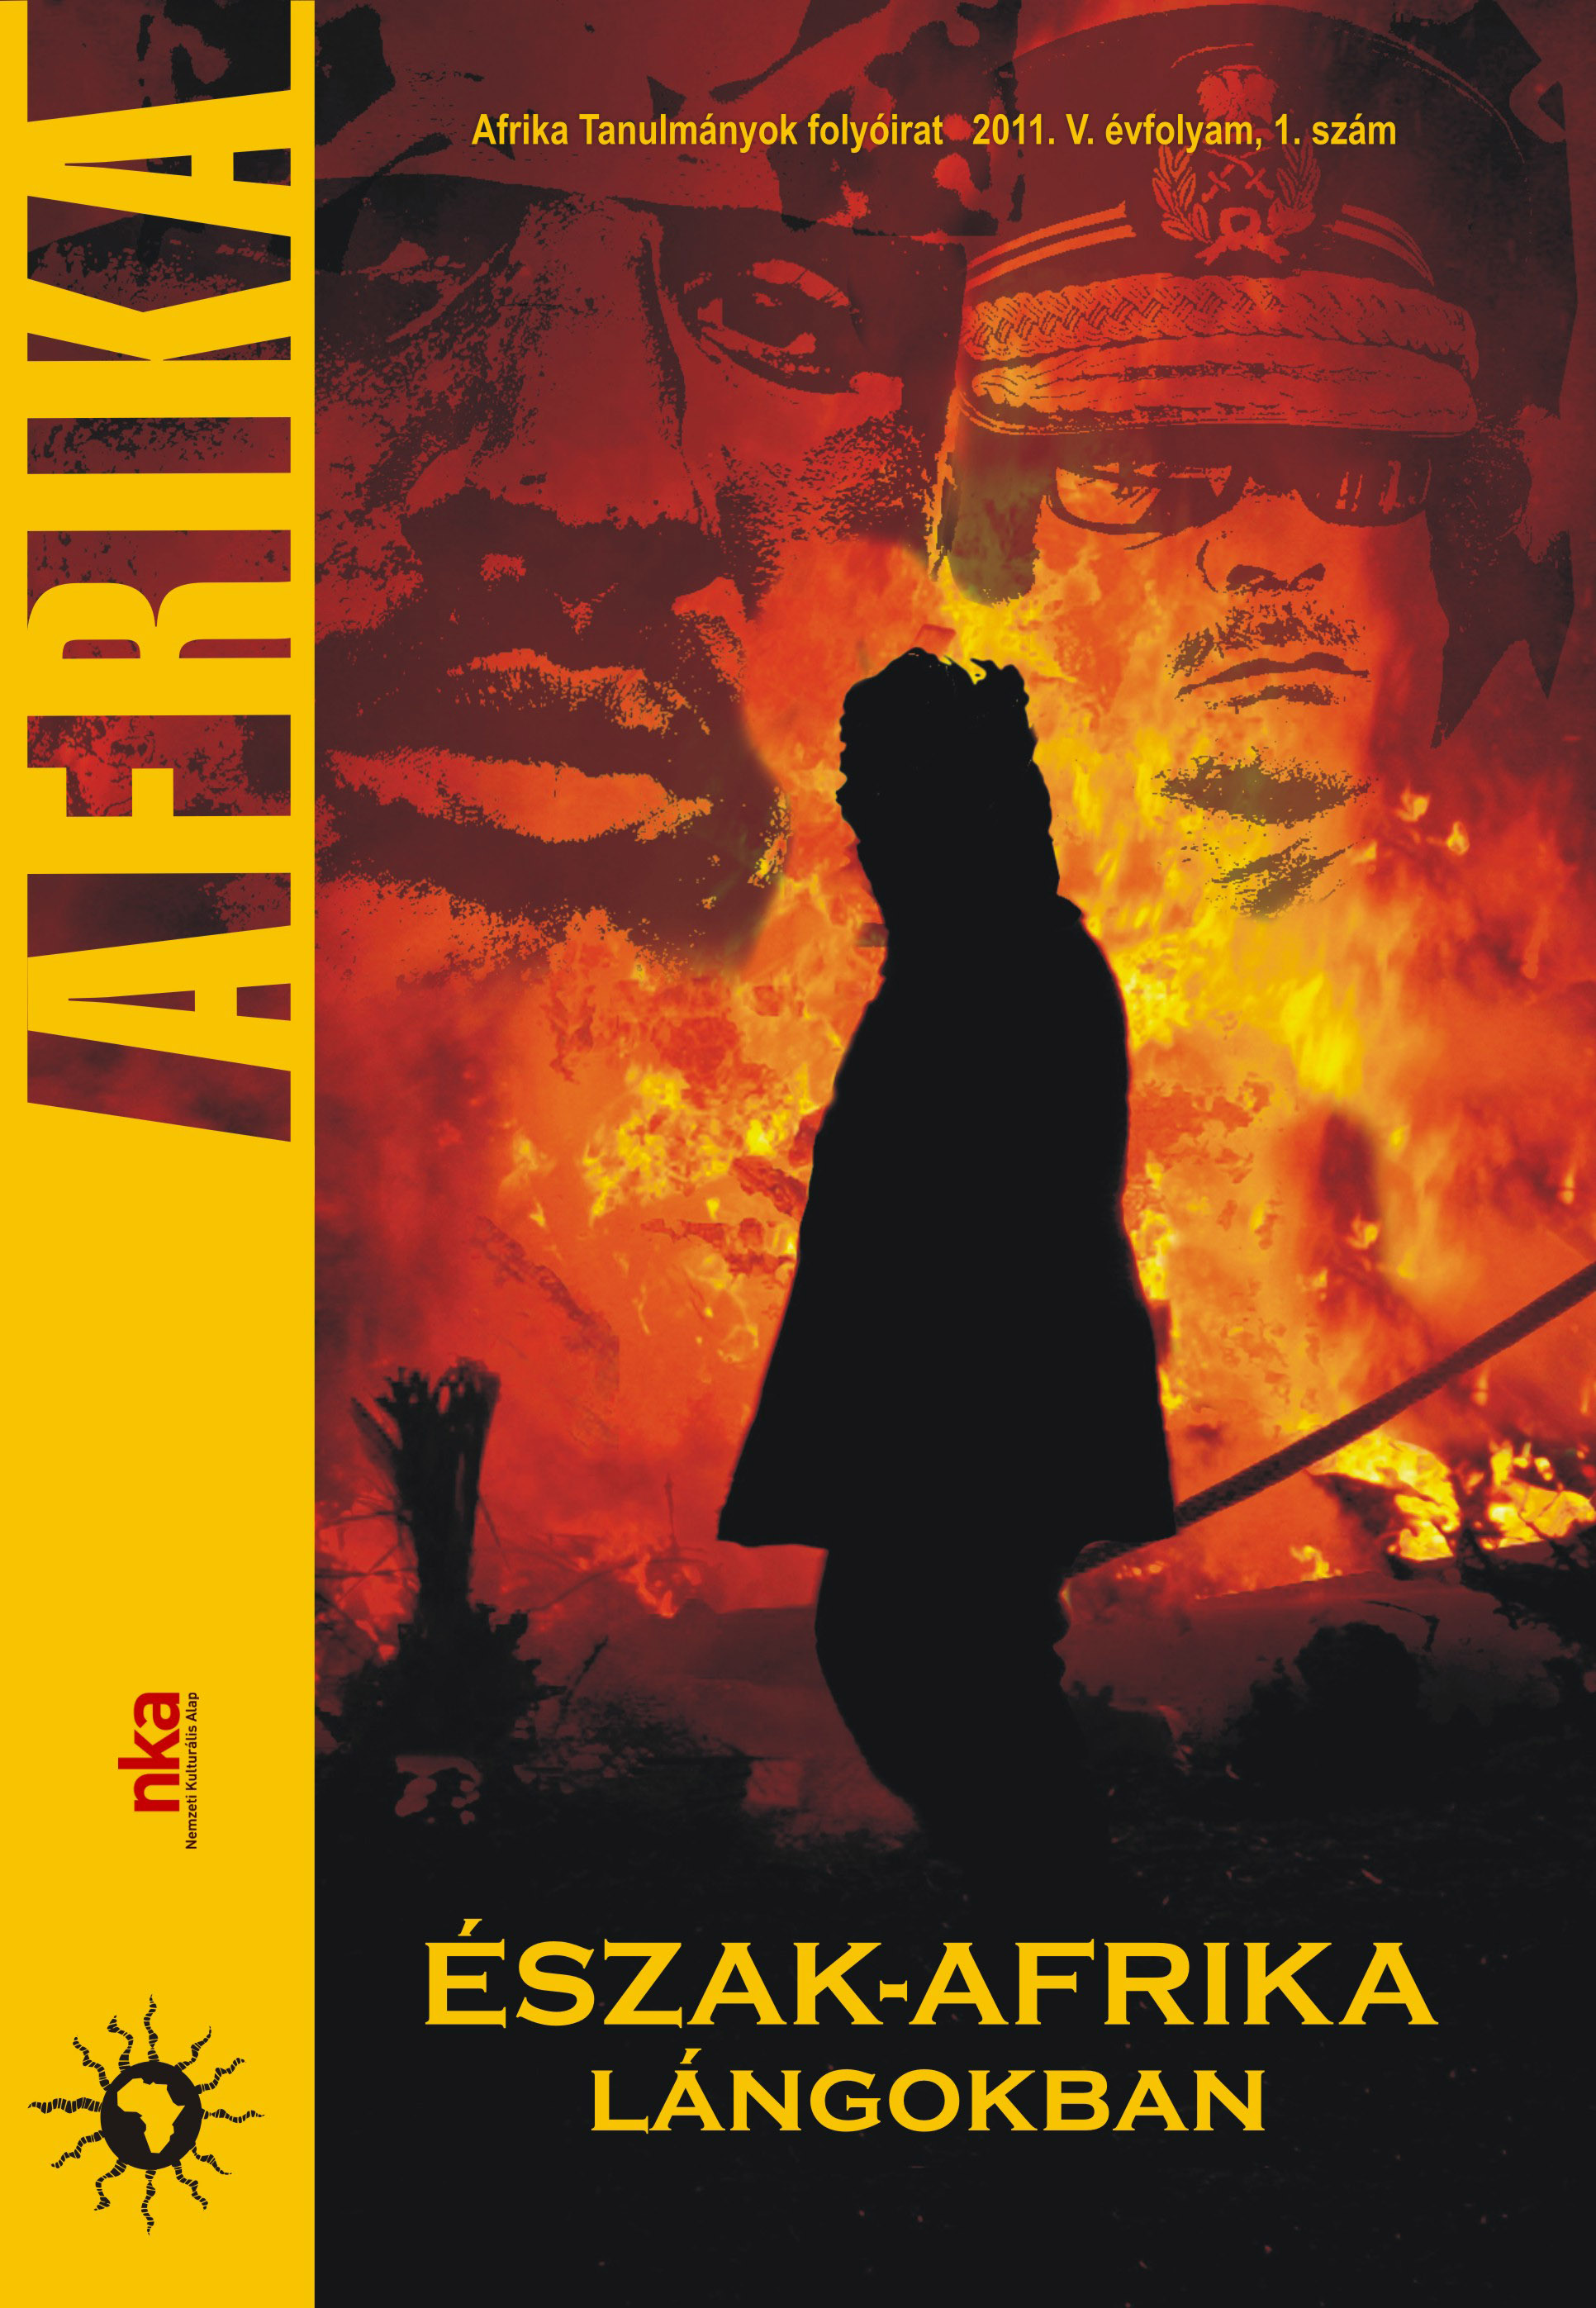 					View Évf. 5 szám 1 (2011): Észak-Afrika lángokban
				